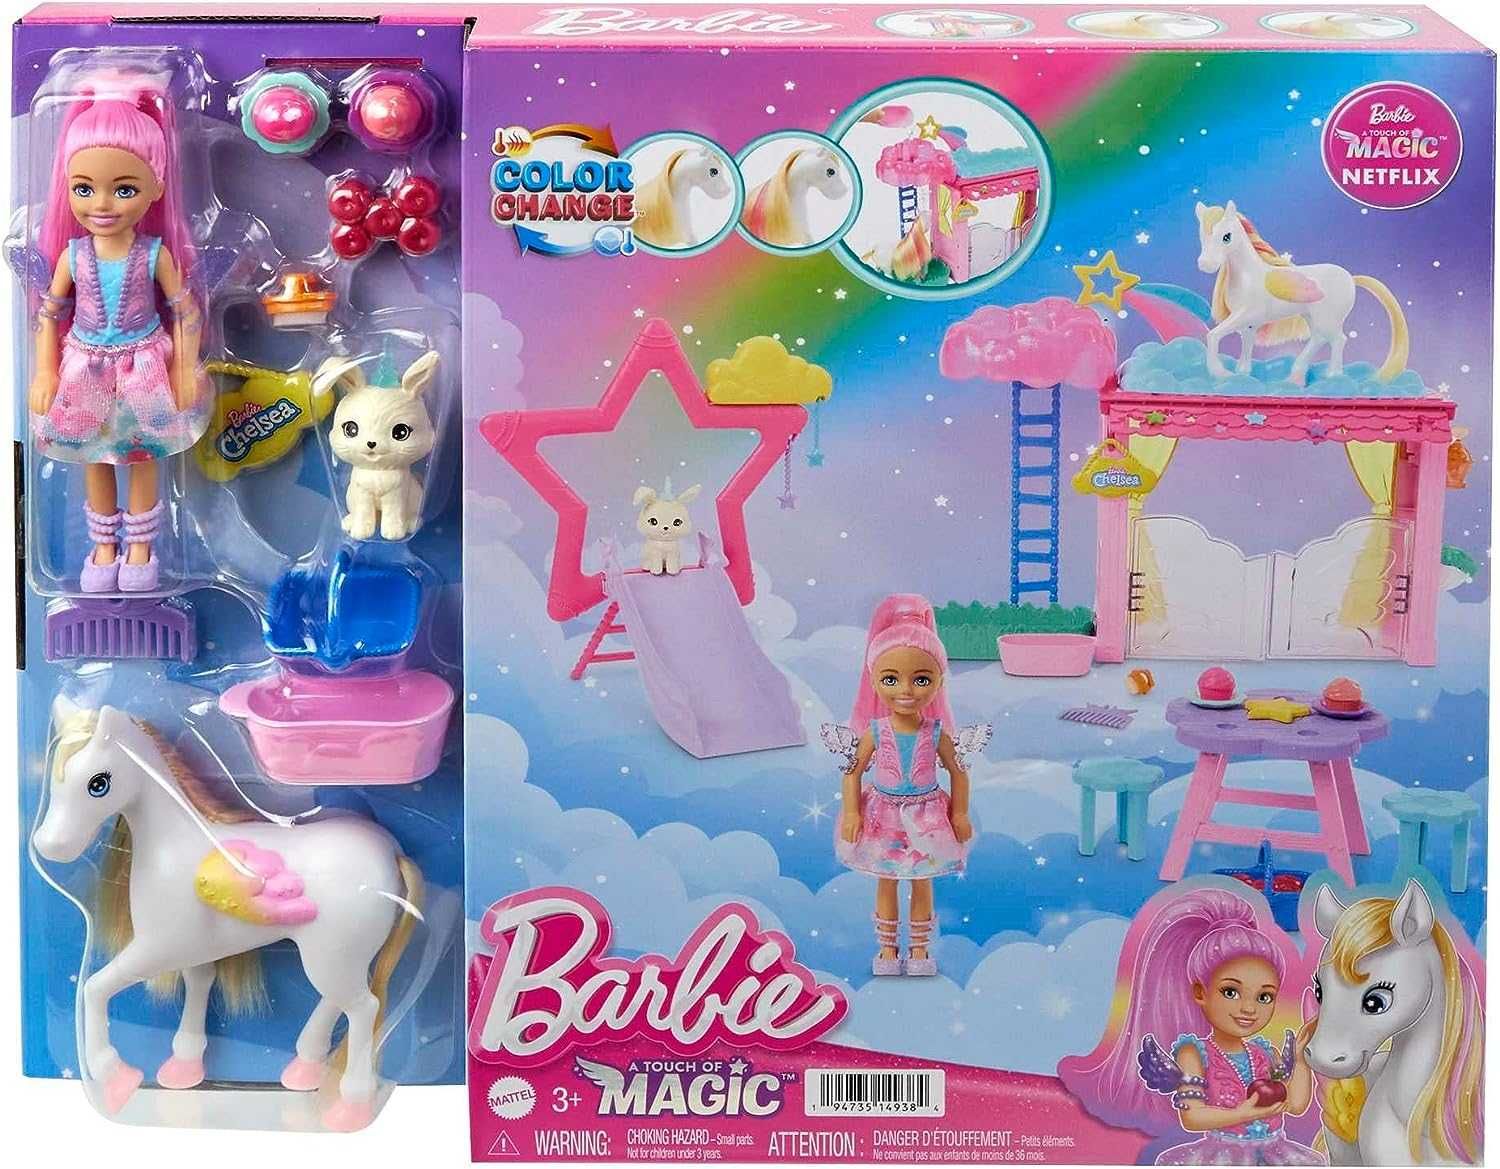 Комплект за игра Barbie Chelsea Doll and Pegasus, барби с пегасус